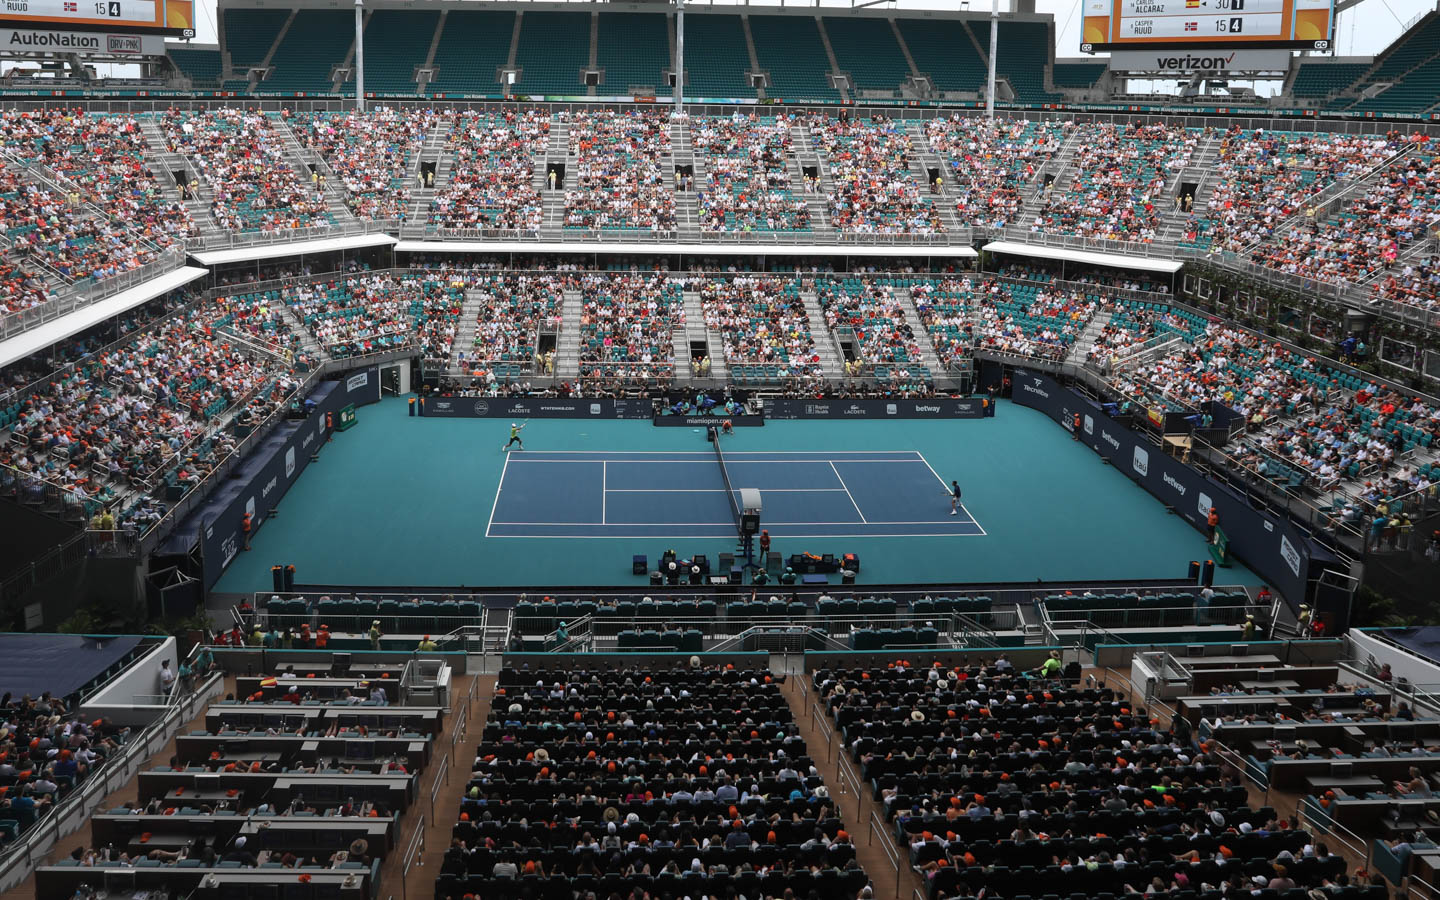 Experience Miami Open Tennis Tournament